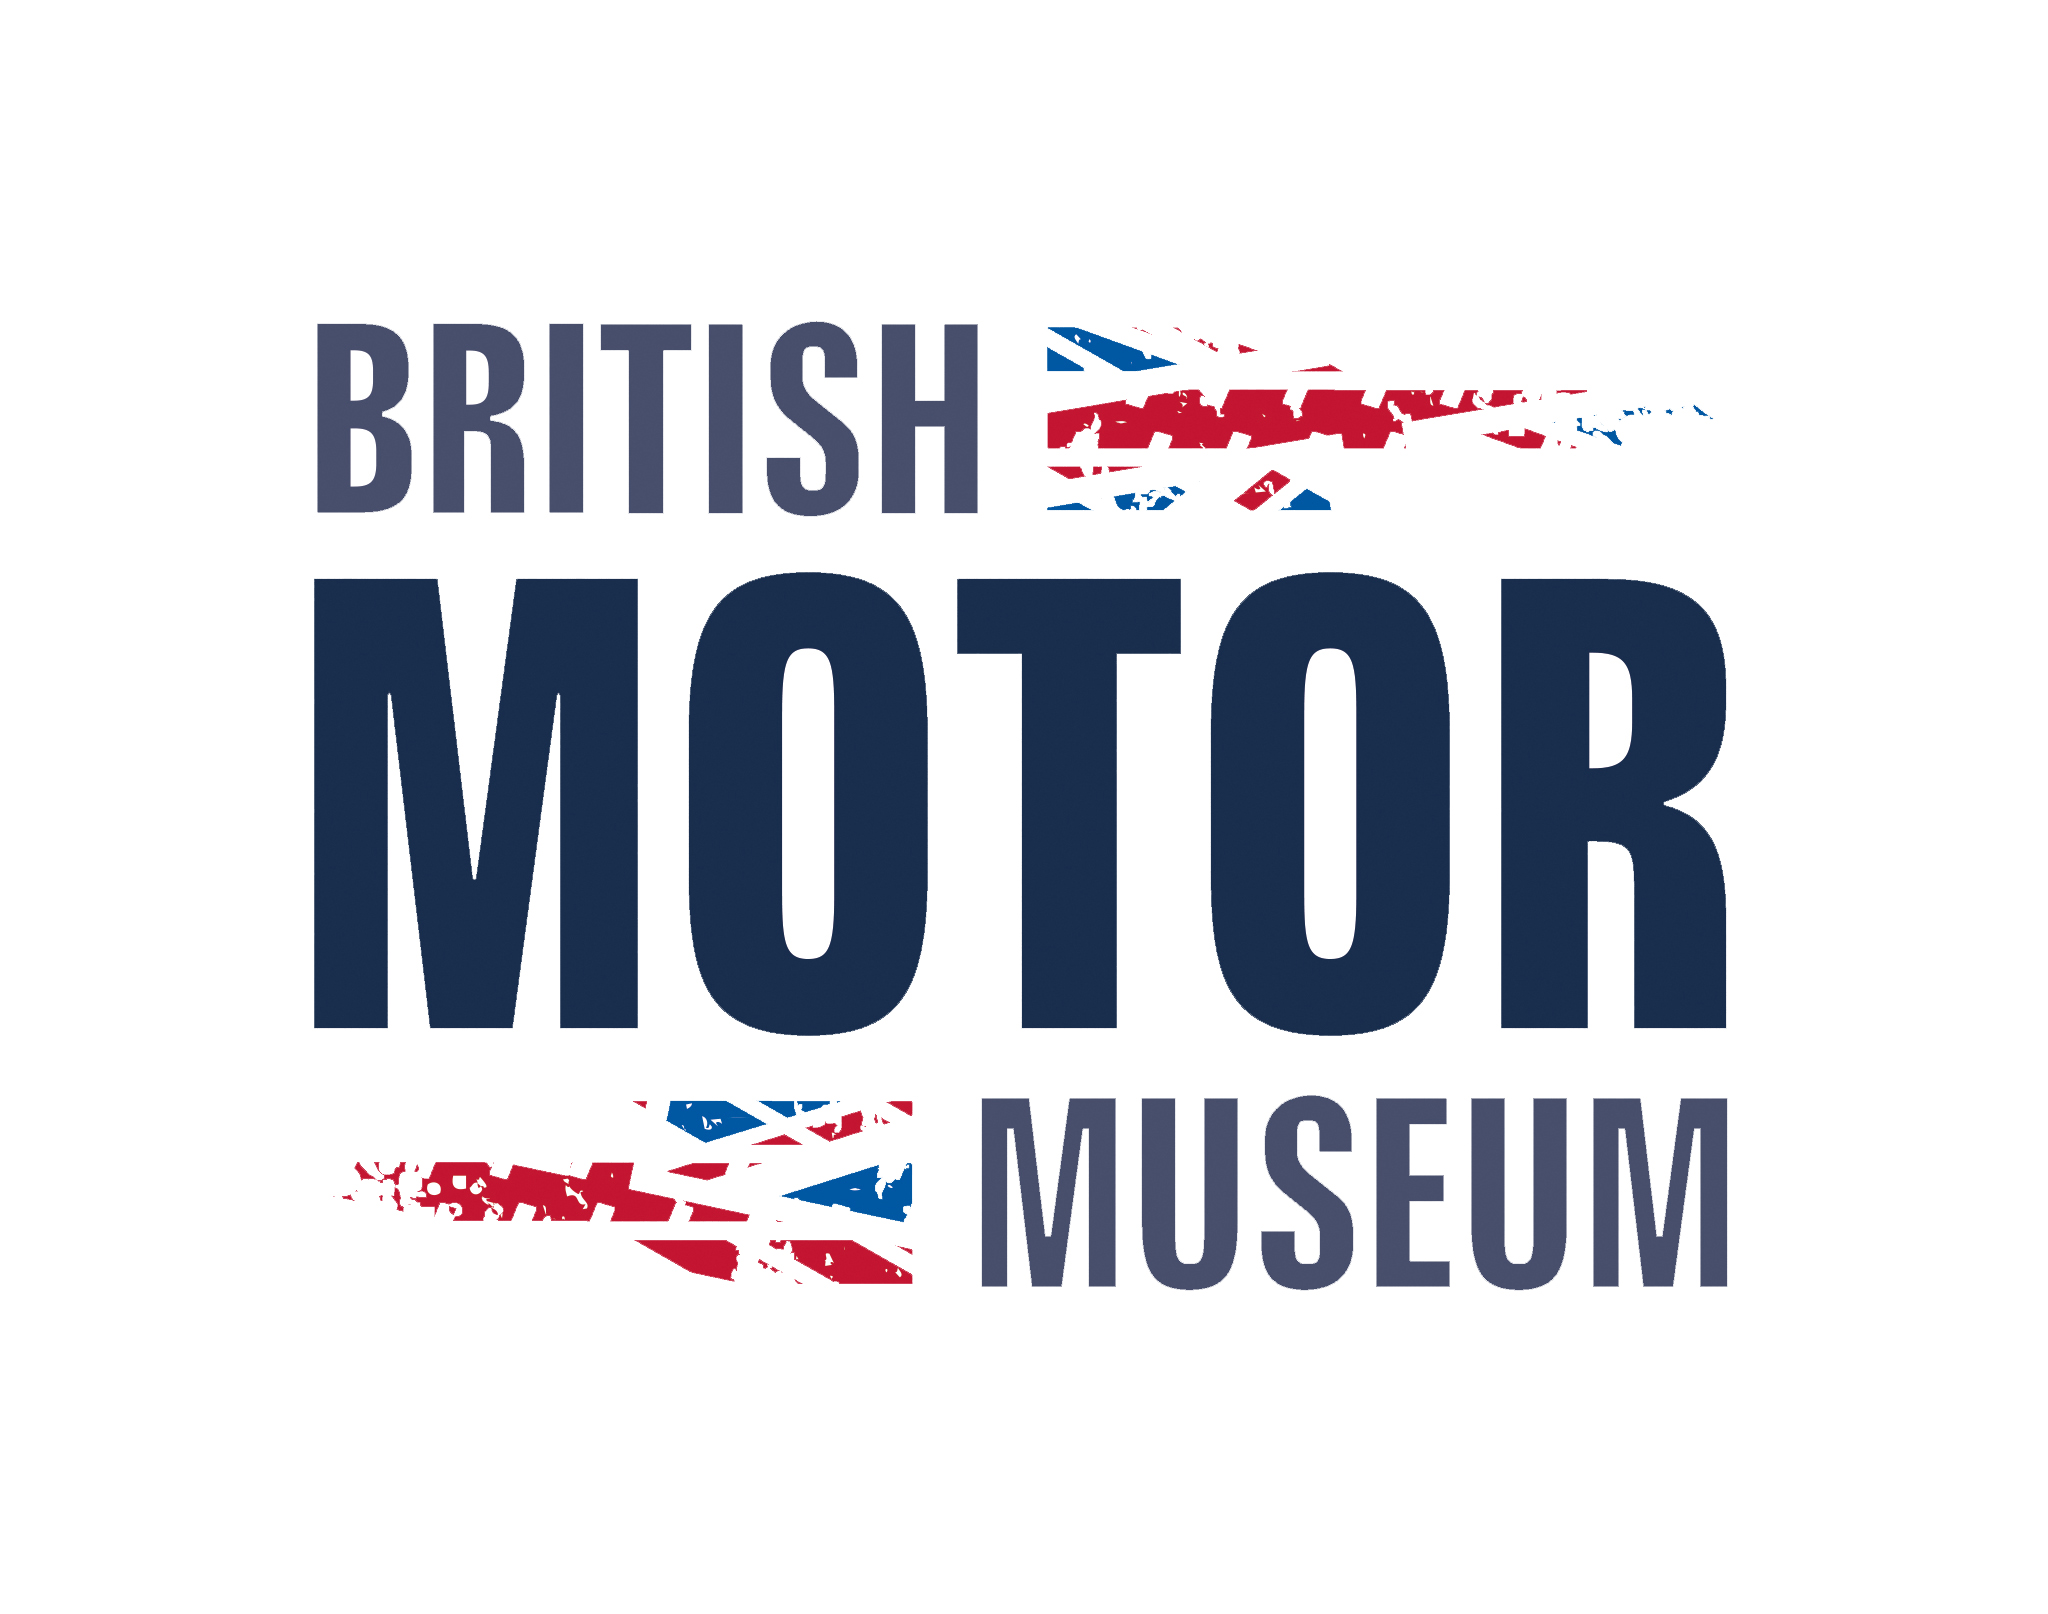 British Motor Museum logo, navy capitalised text on white background